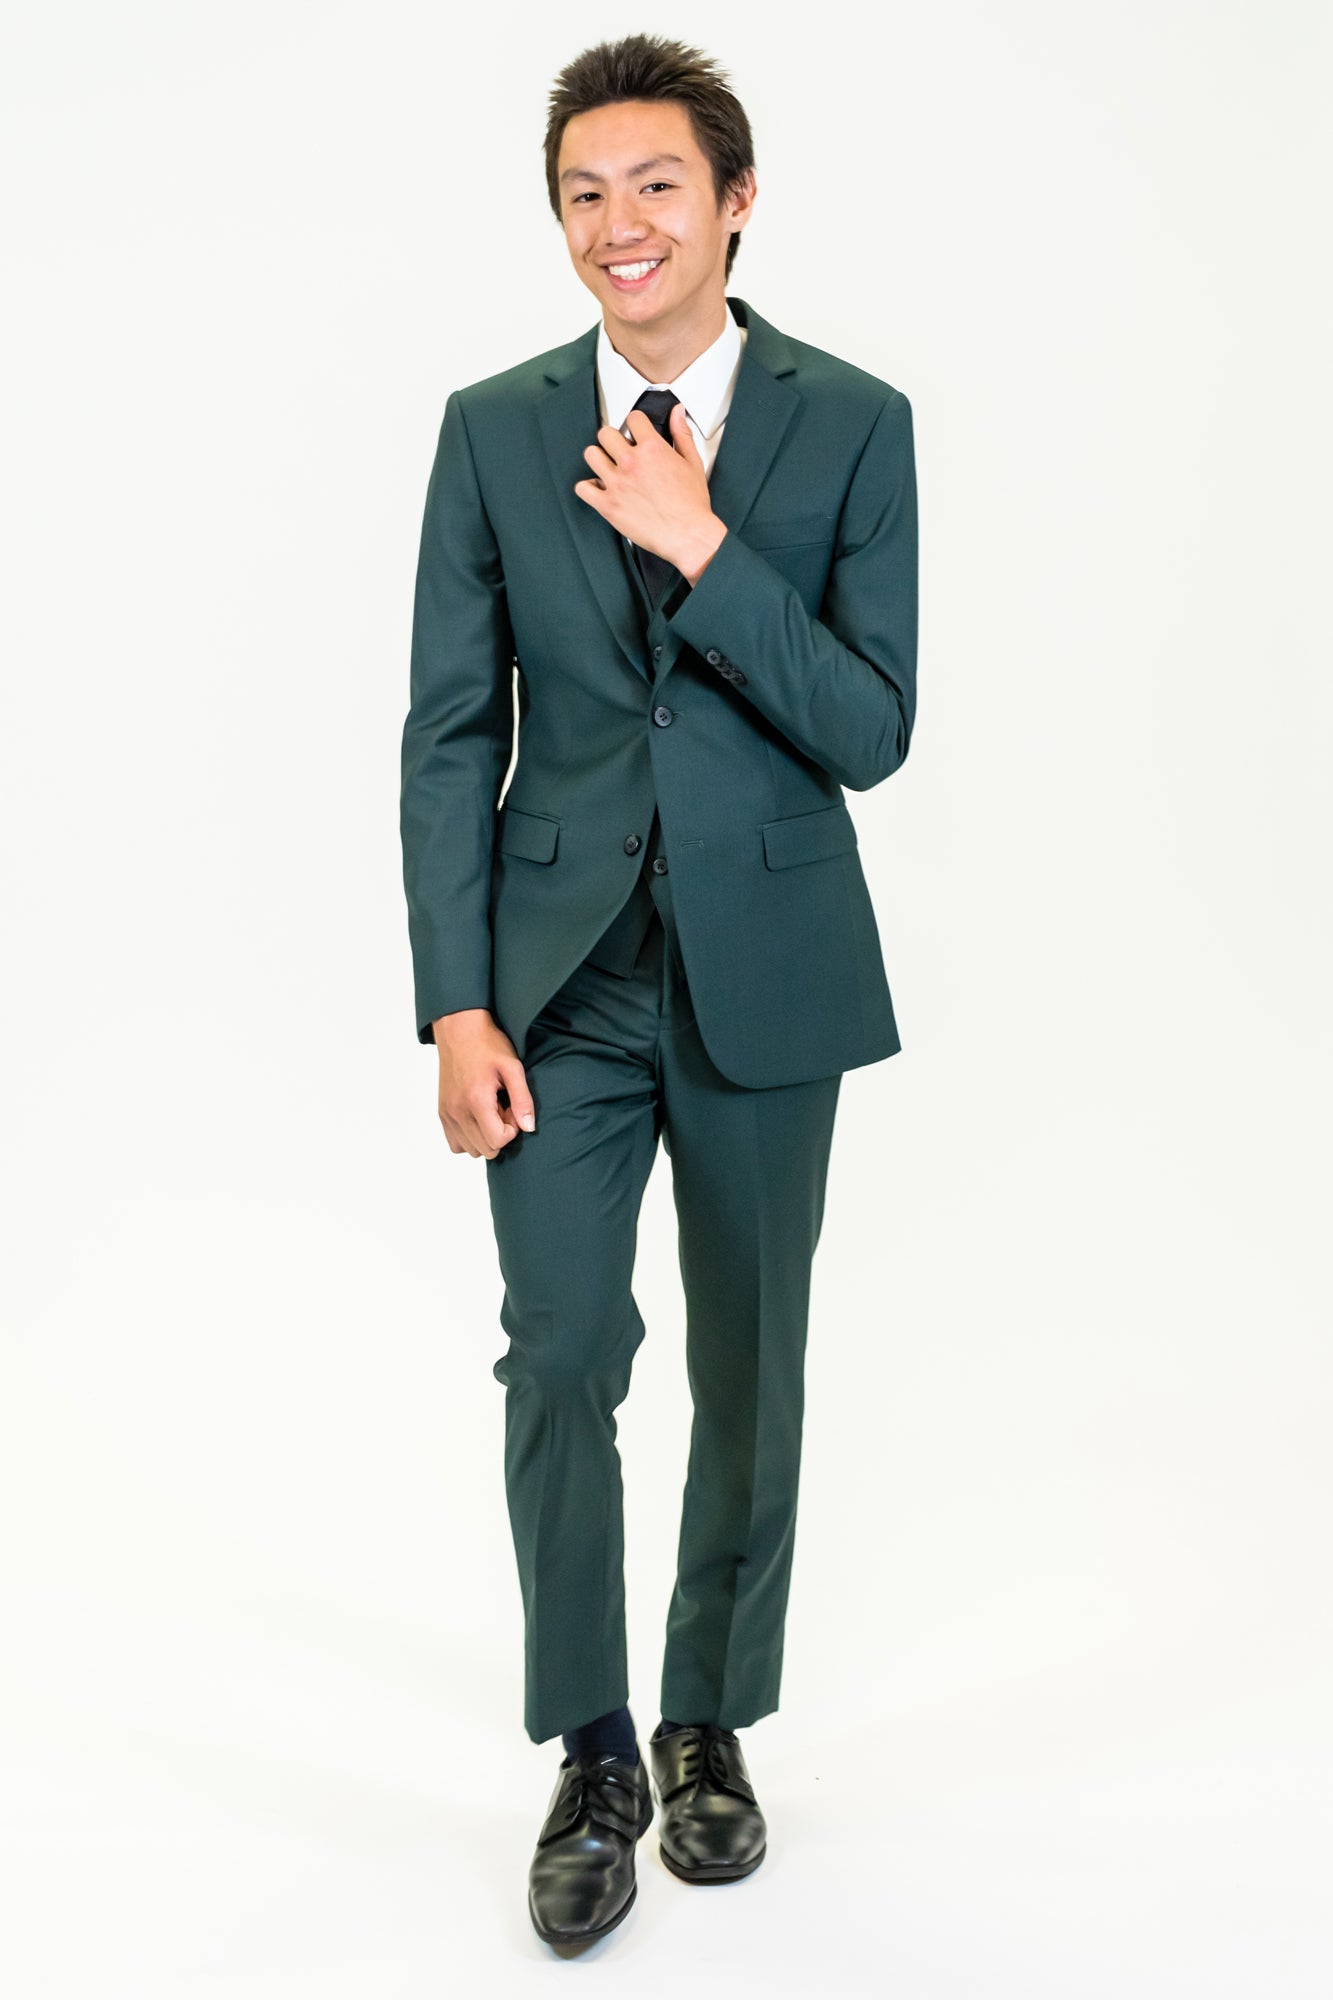 high school student boy wearing green suit walking adjusting black tie